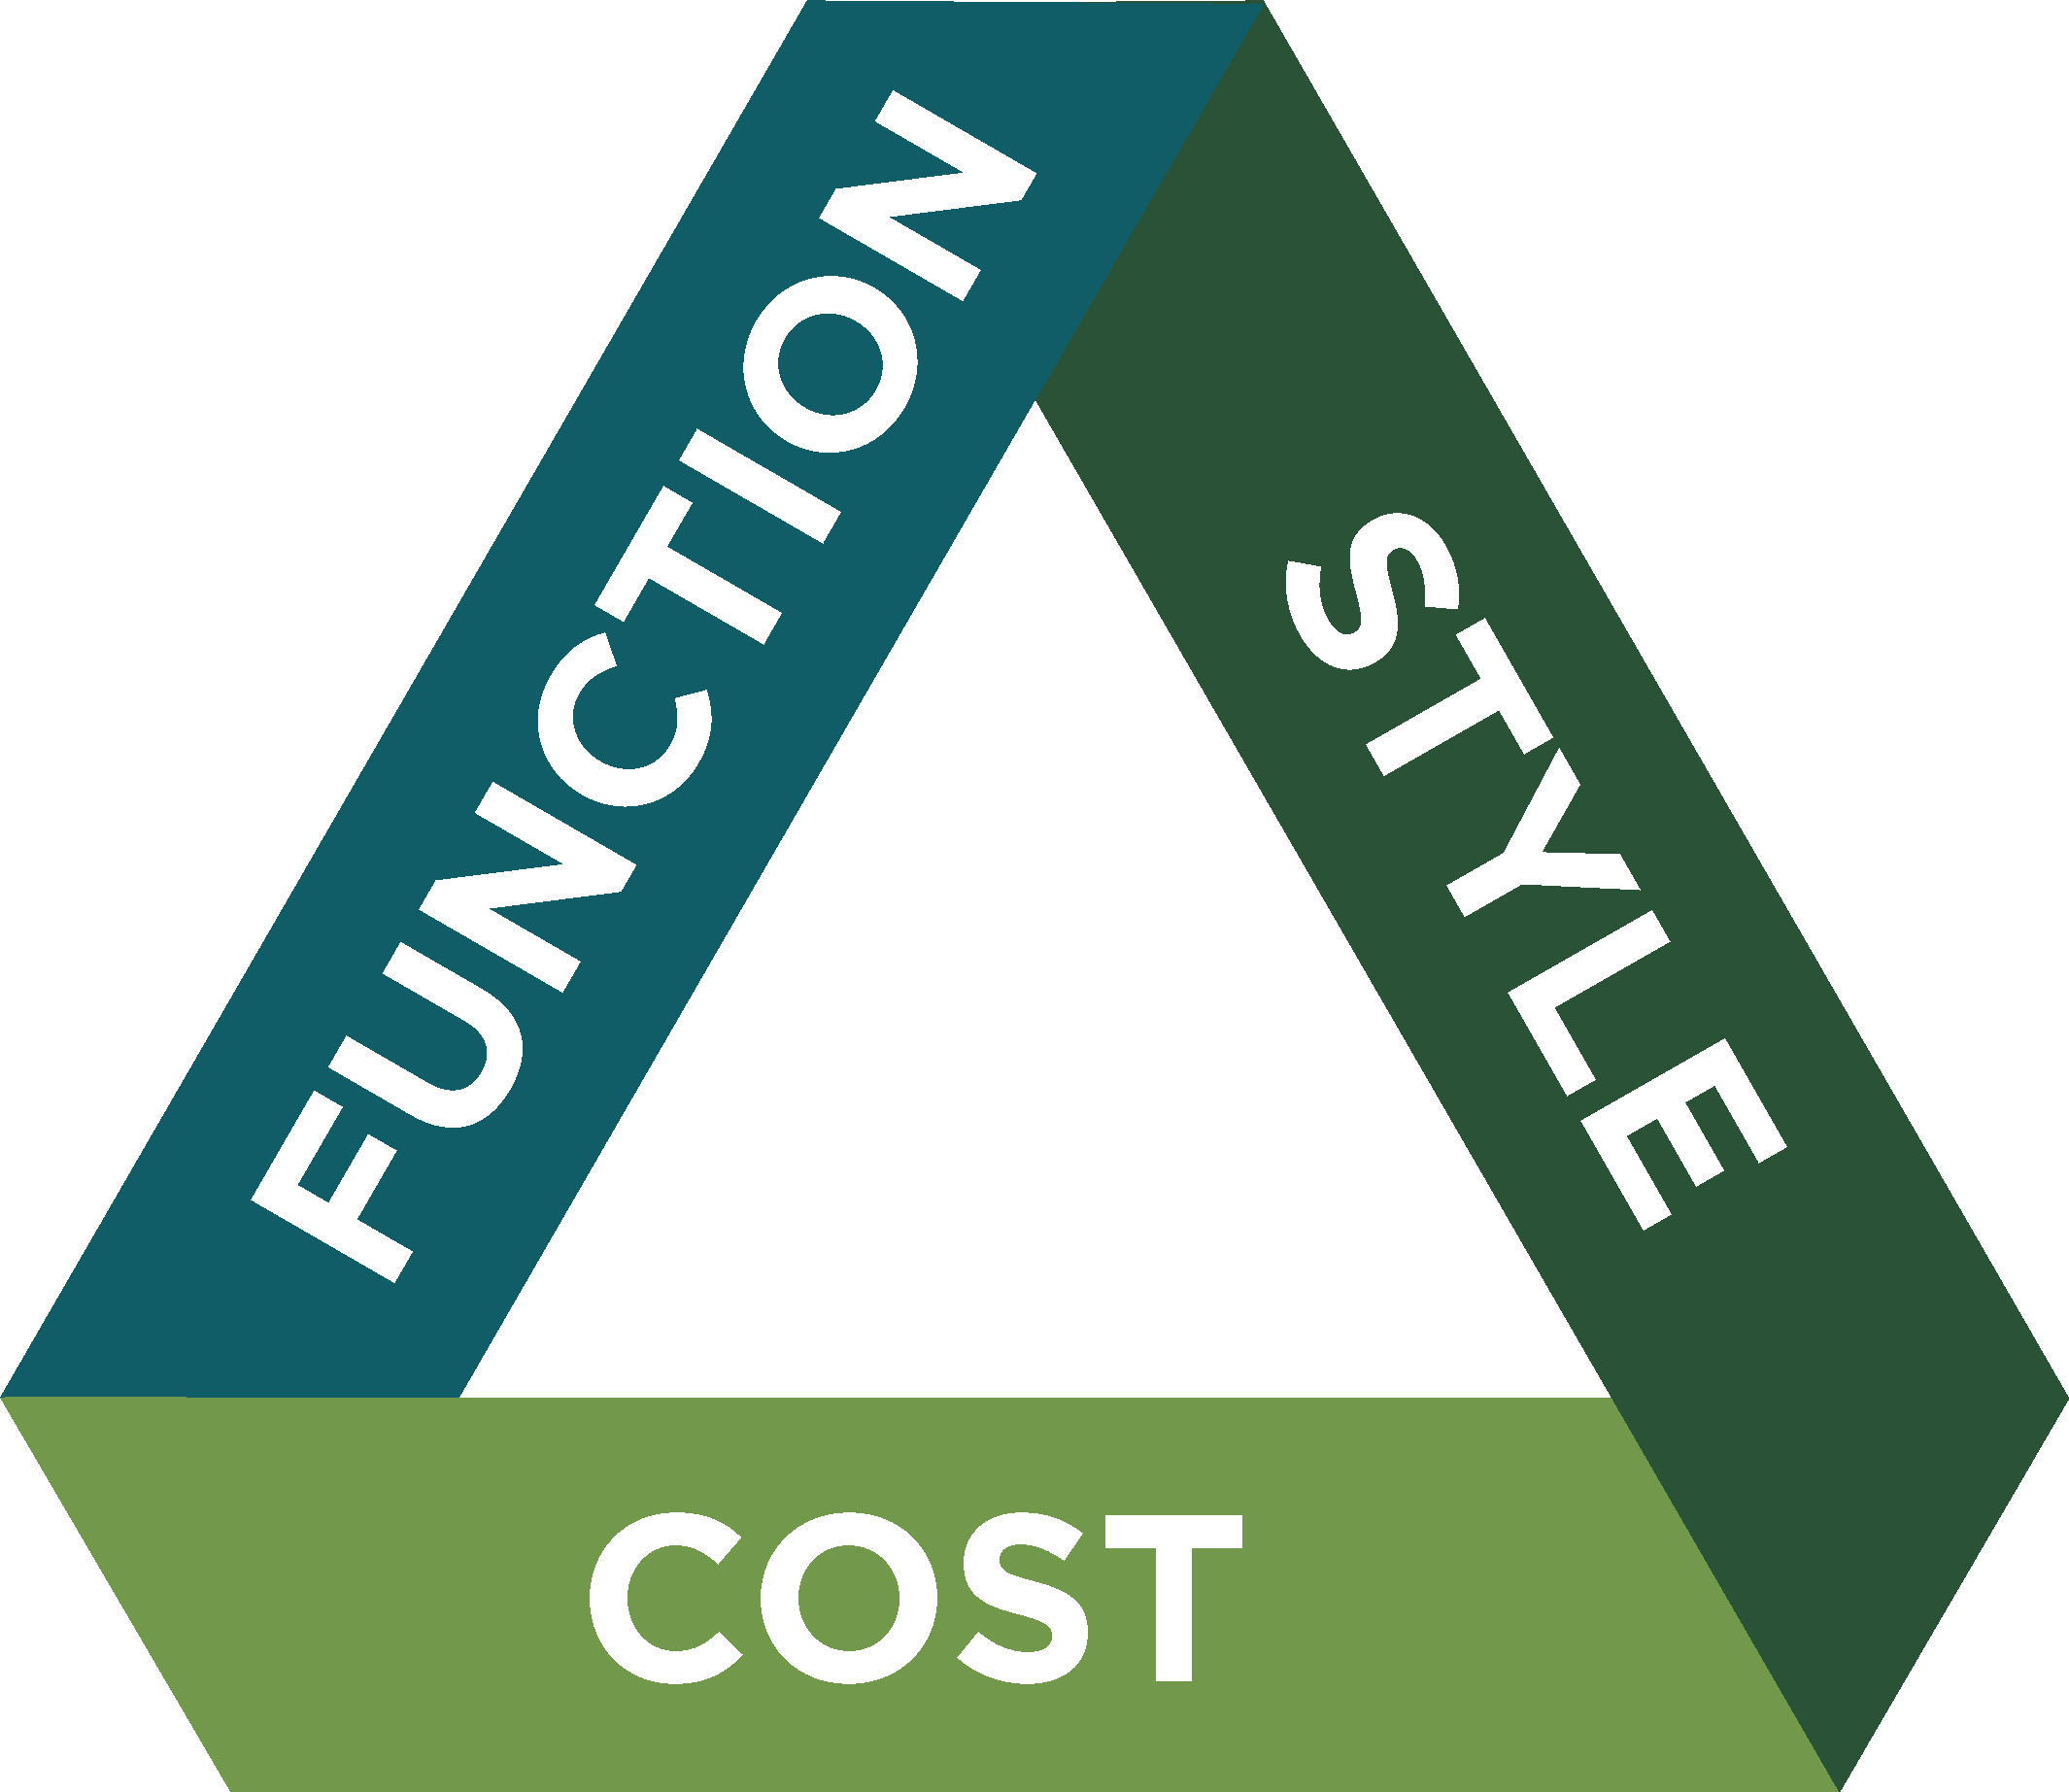 Design Triangle Graphic